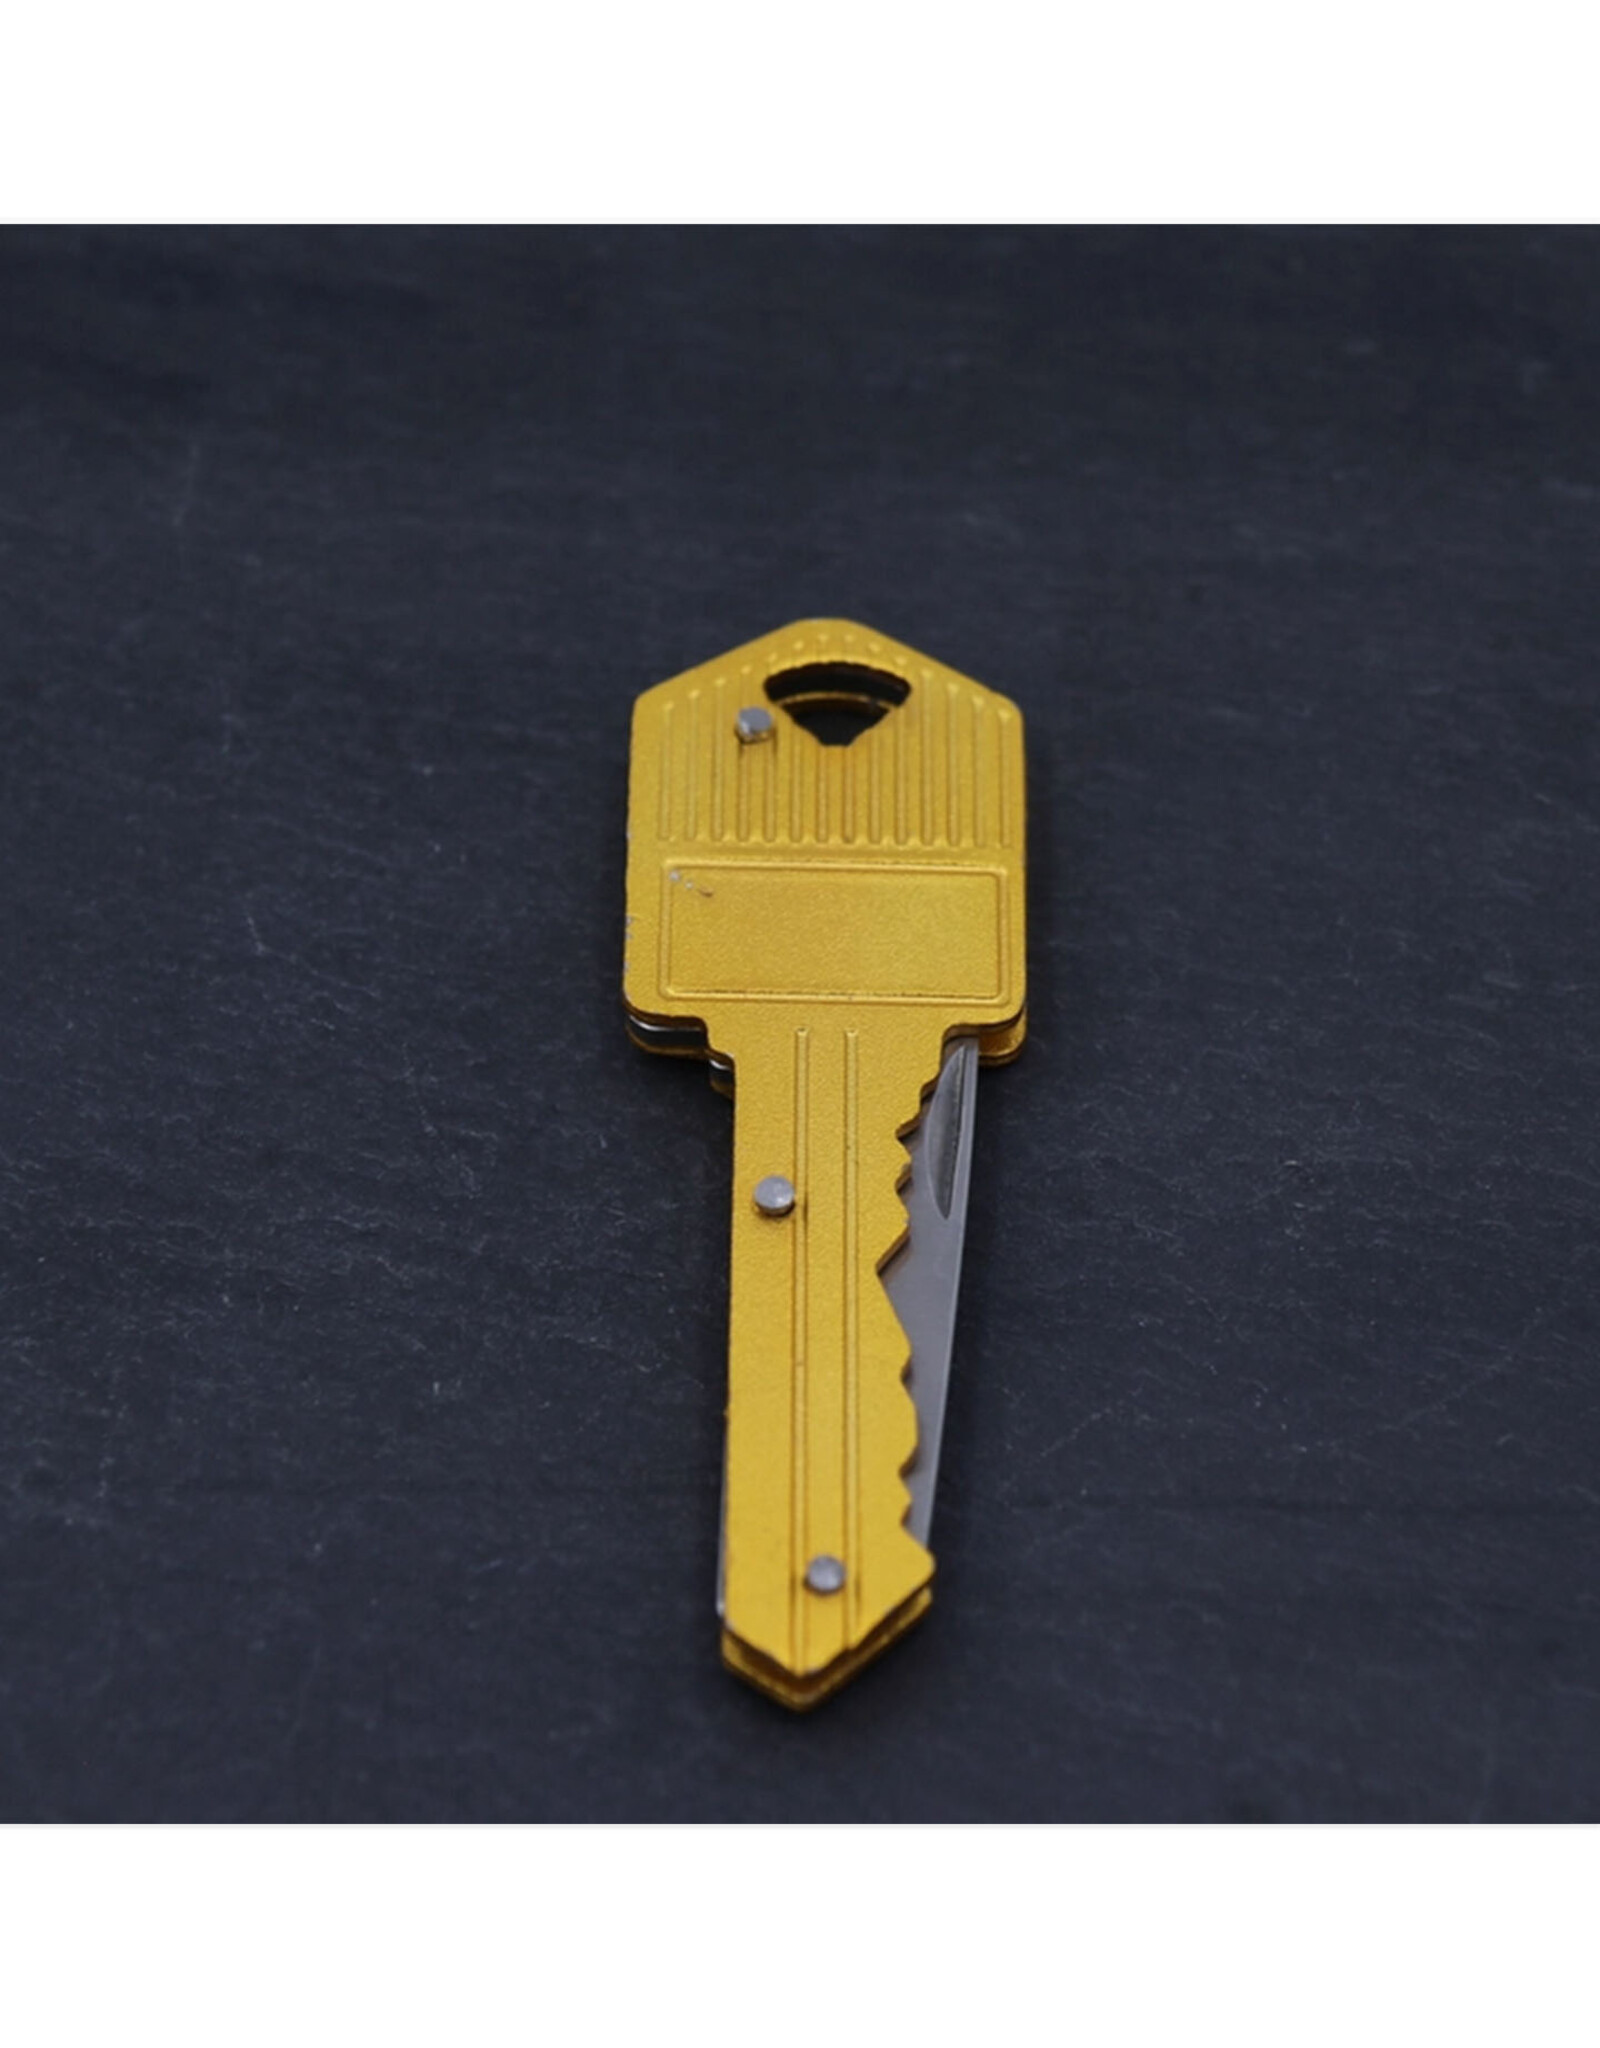 Key Knife Keychain - 2'' Blade - Brass